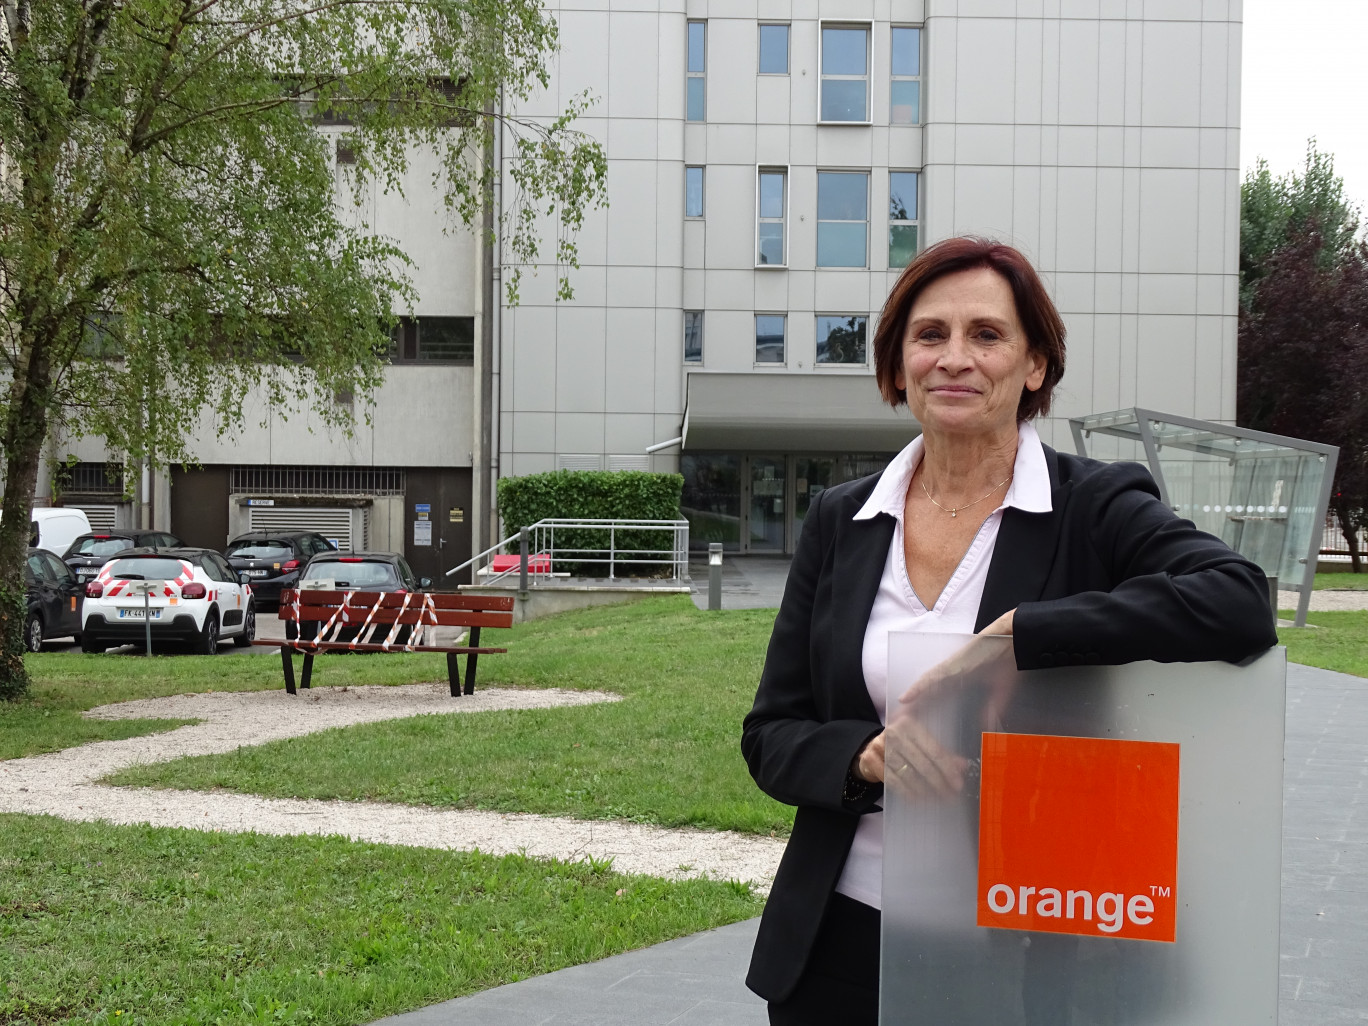 © Aletheia Press  / NadègeHubert Véronique Morlighem rappelle qu’Orange déploie ses réseaux et dispose des solutions pour chacun, en fonction des usages et des territoires. 